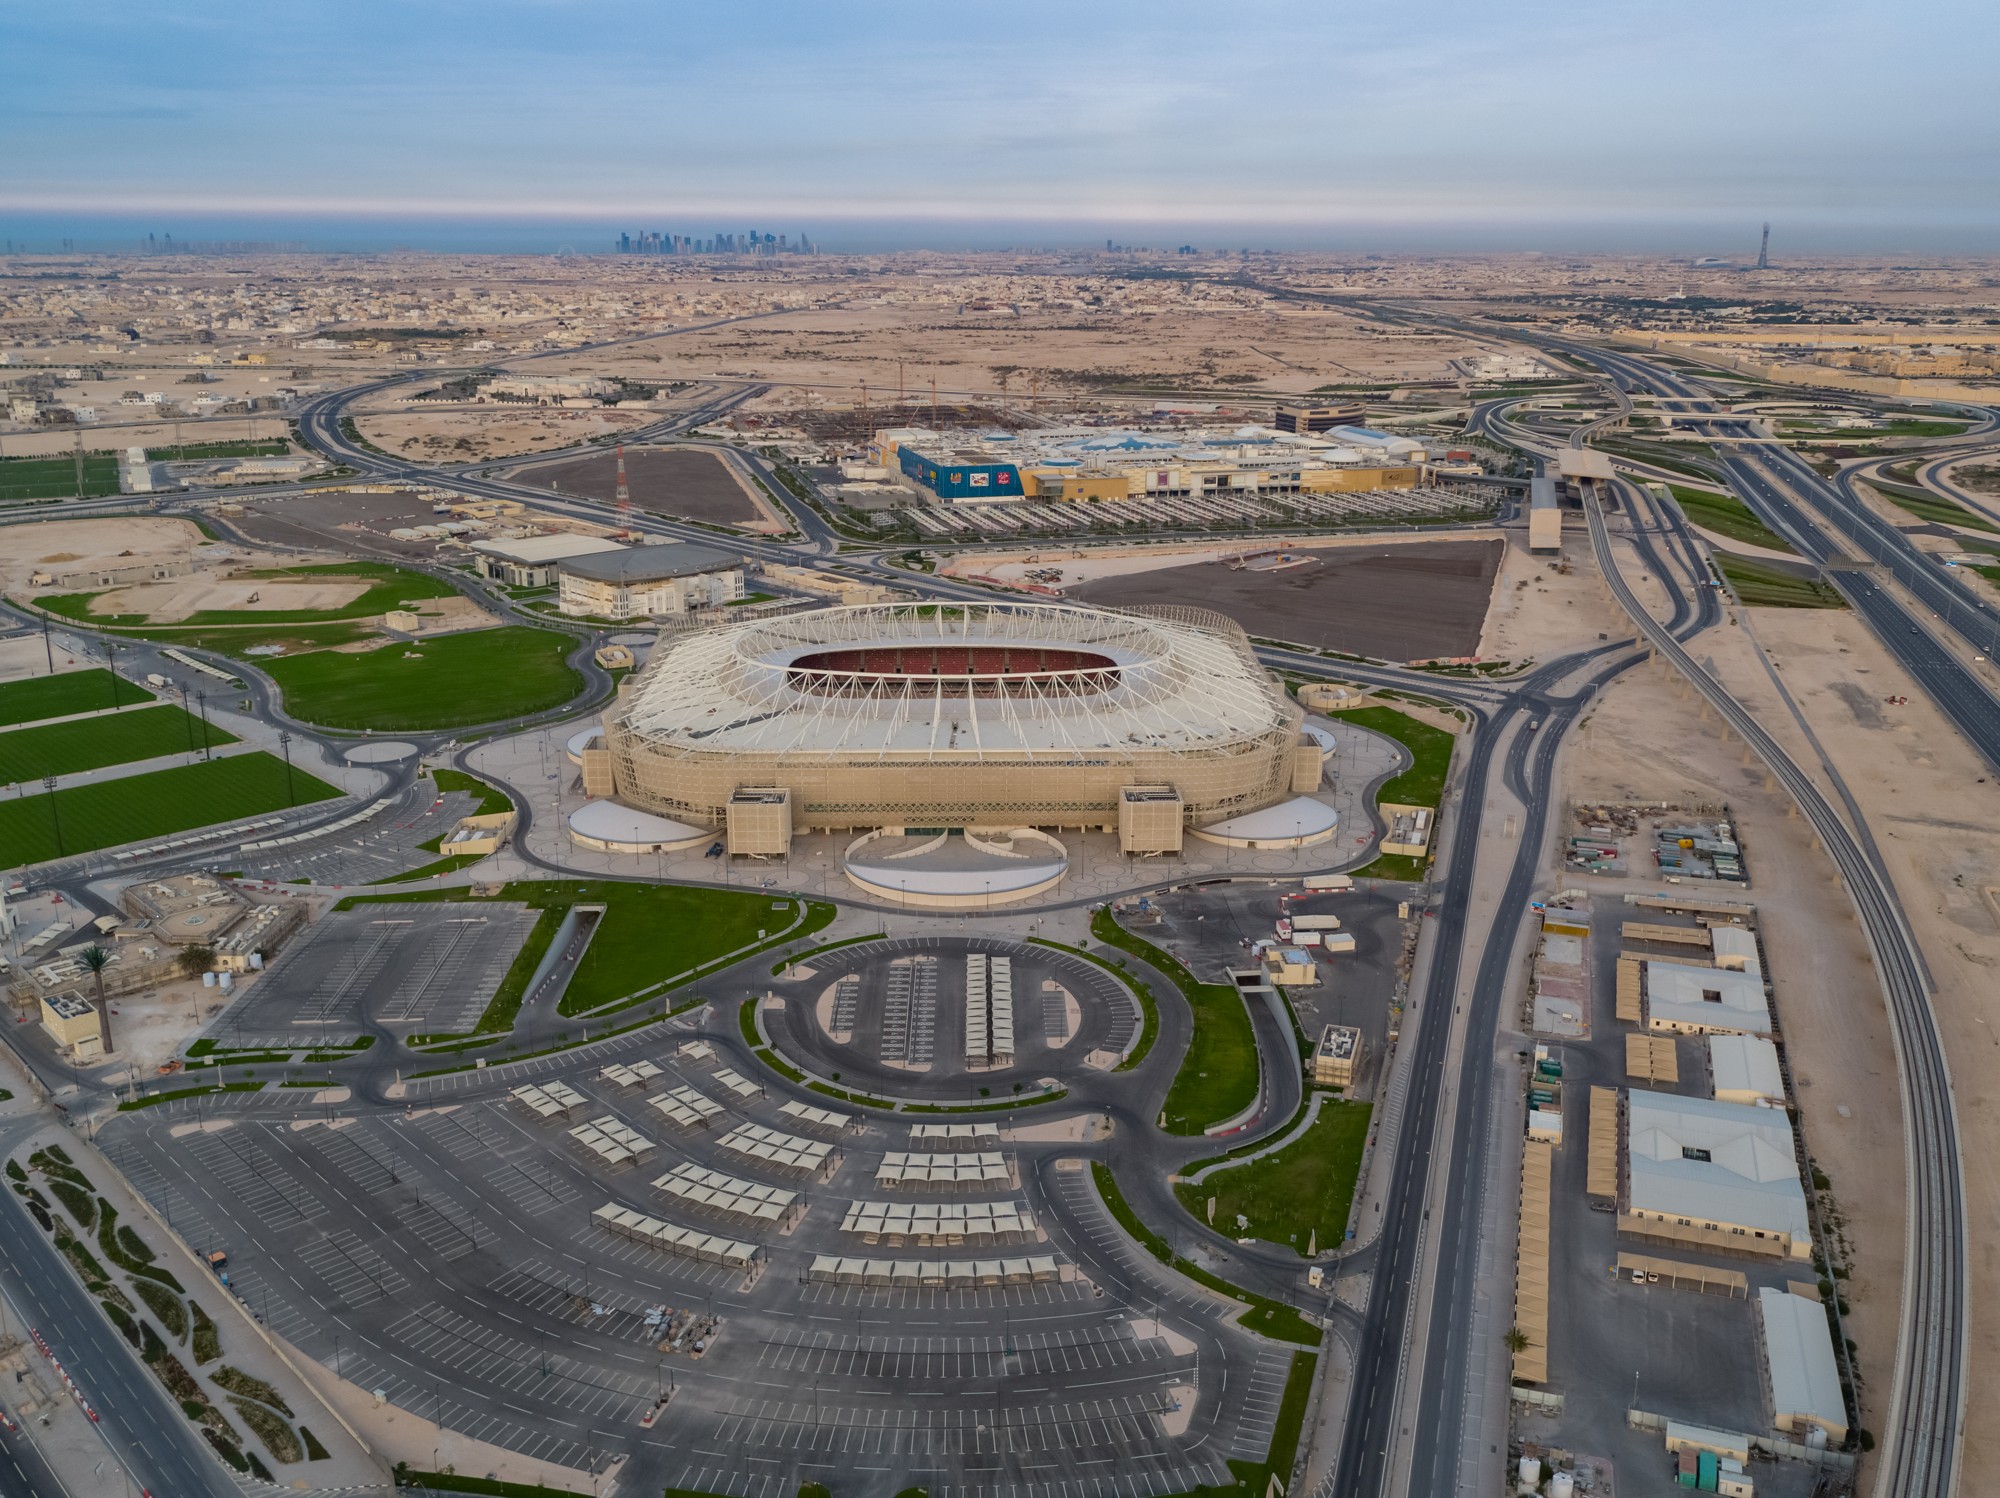 Ahmad bin Ali Stadium (Al-Rayyan Stadium) – StadiumDB.com